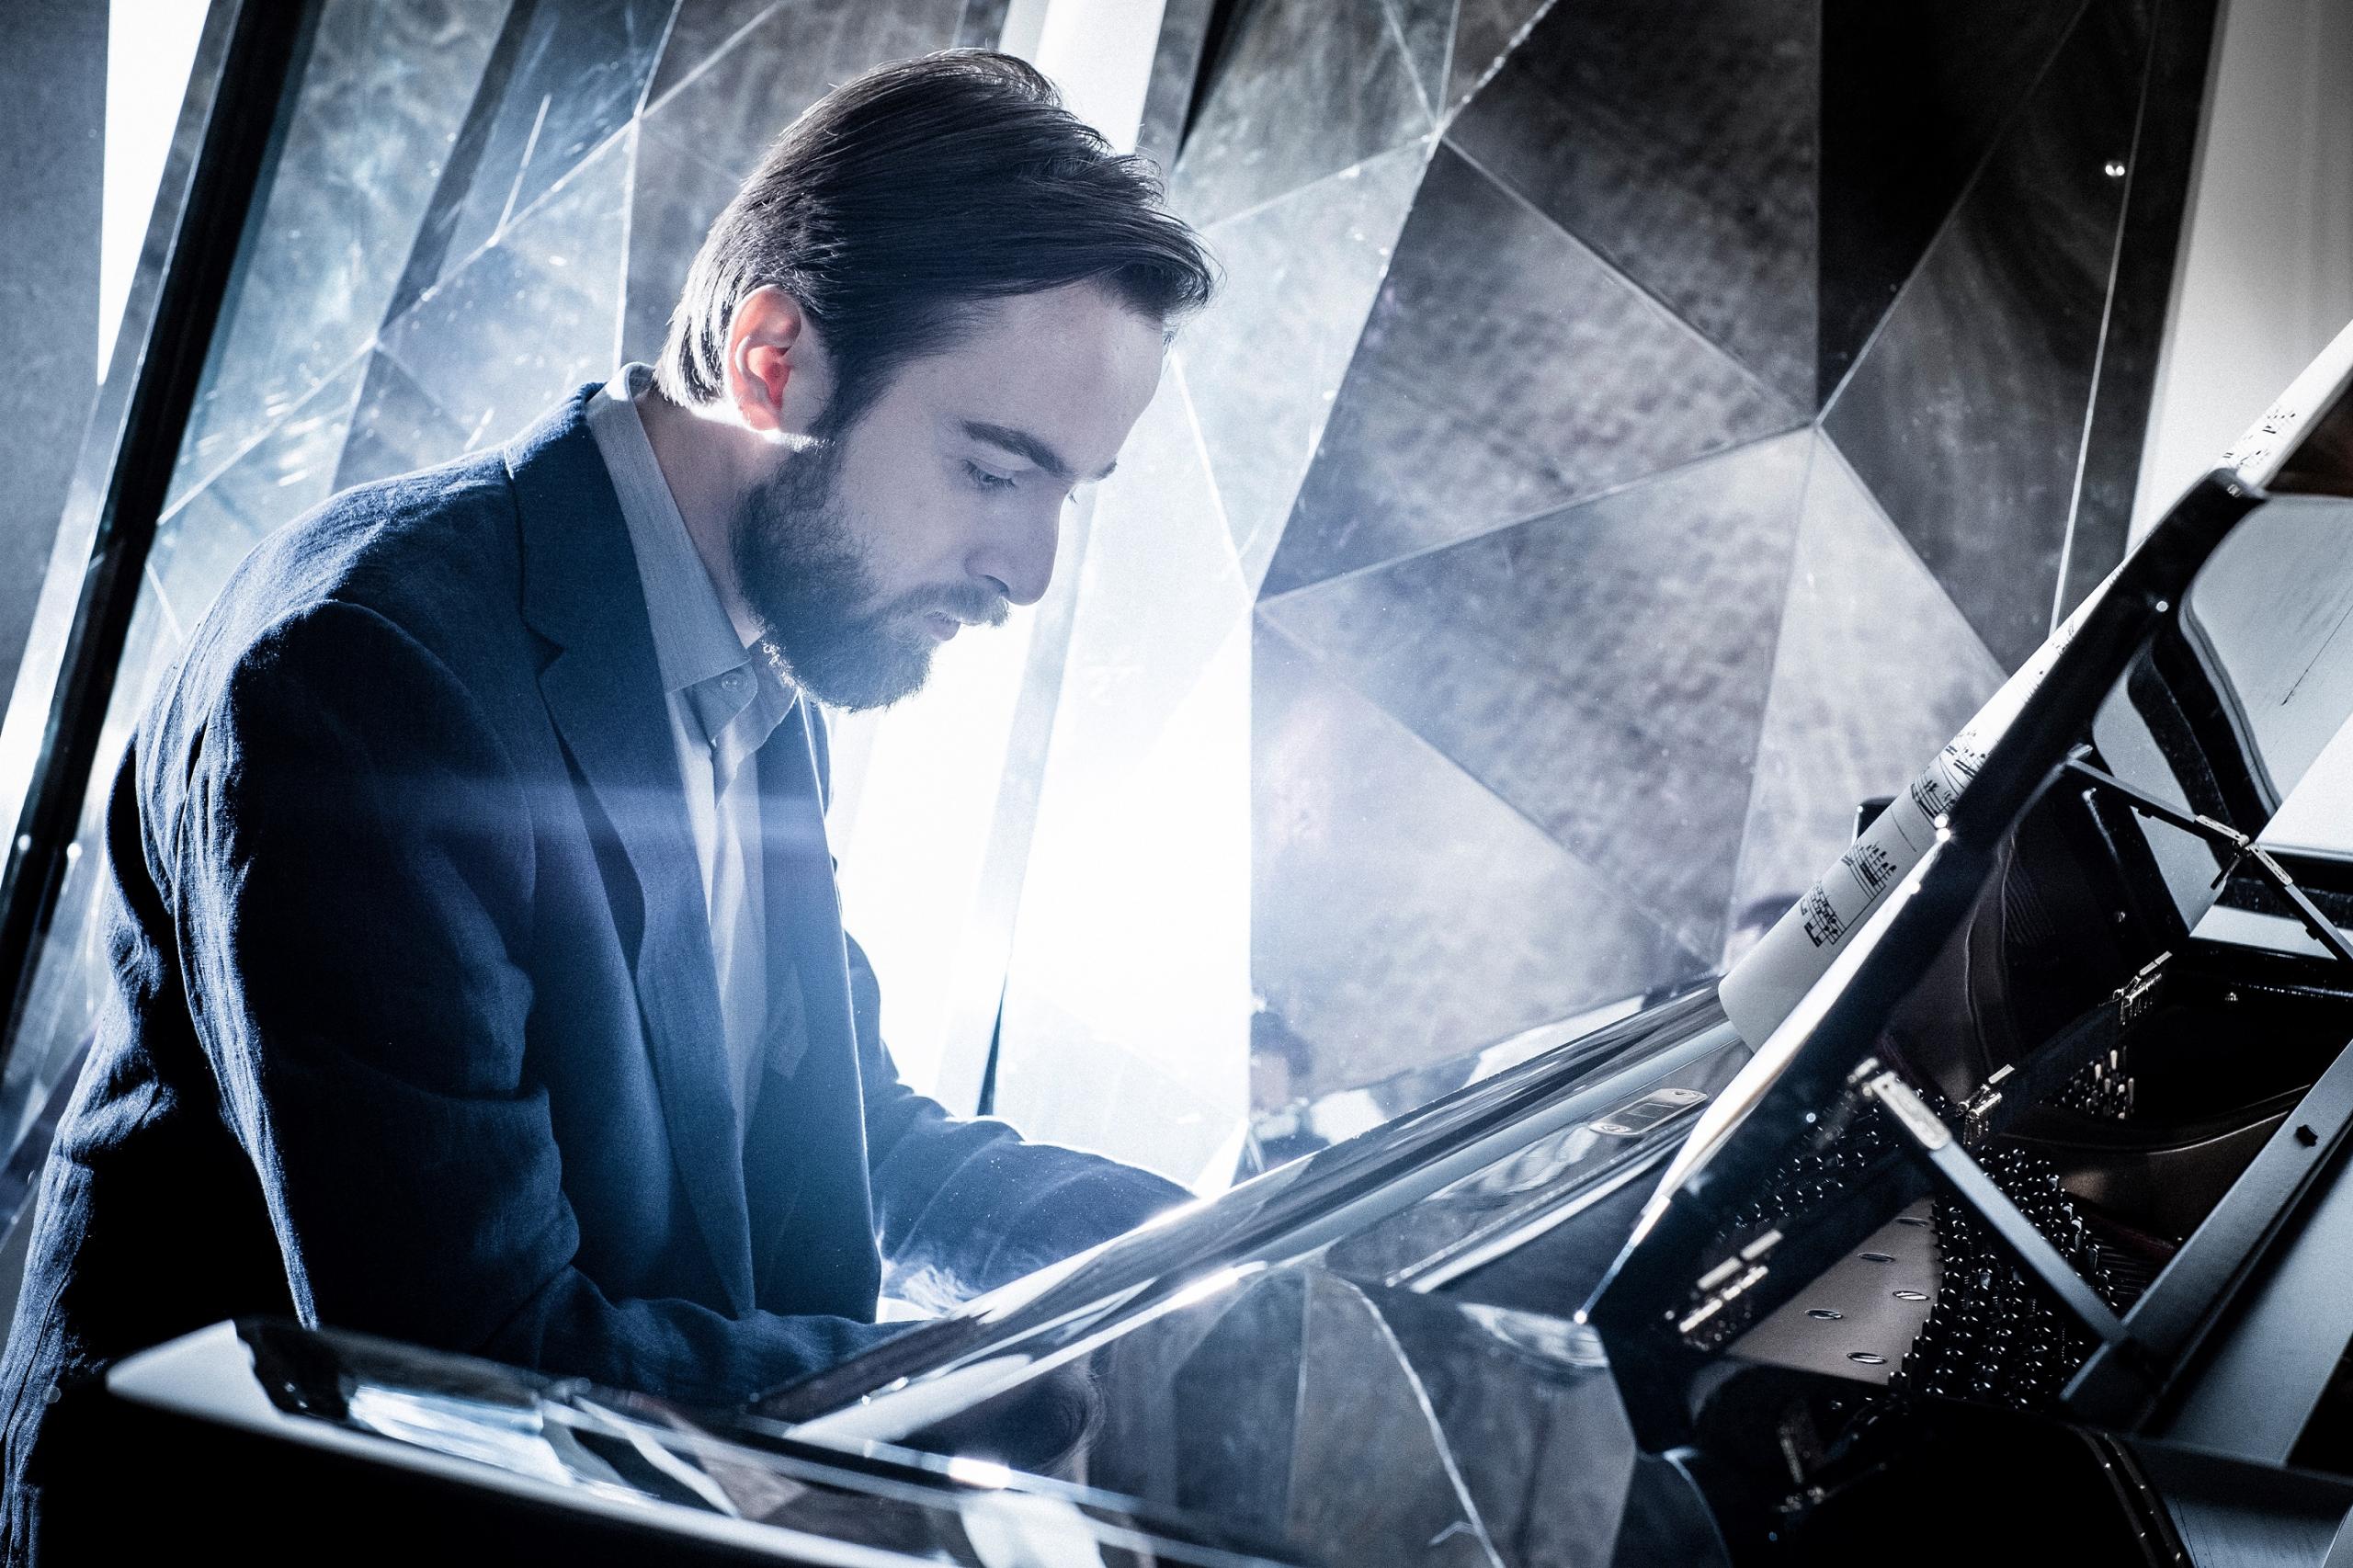 Der Pianist Daniil Trifonov sitzt an einem schwwarzen Flügel vor einem Hintergrund, der aus vielen kleinen, metallisch spiegelnden Flächen besteht.